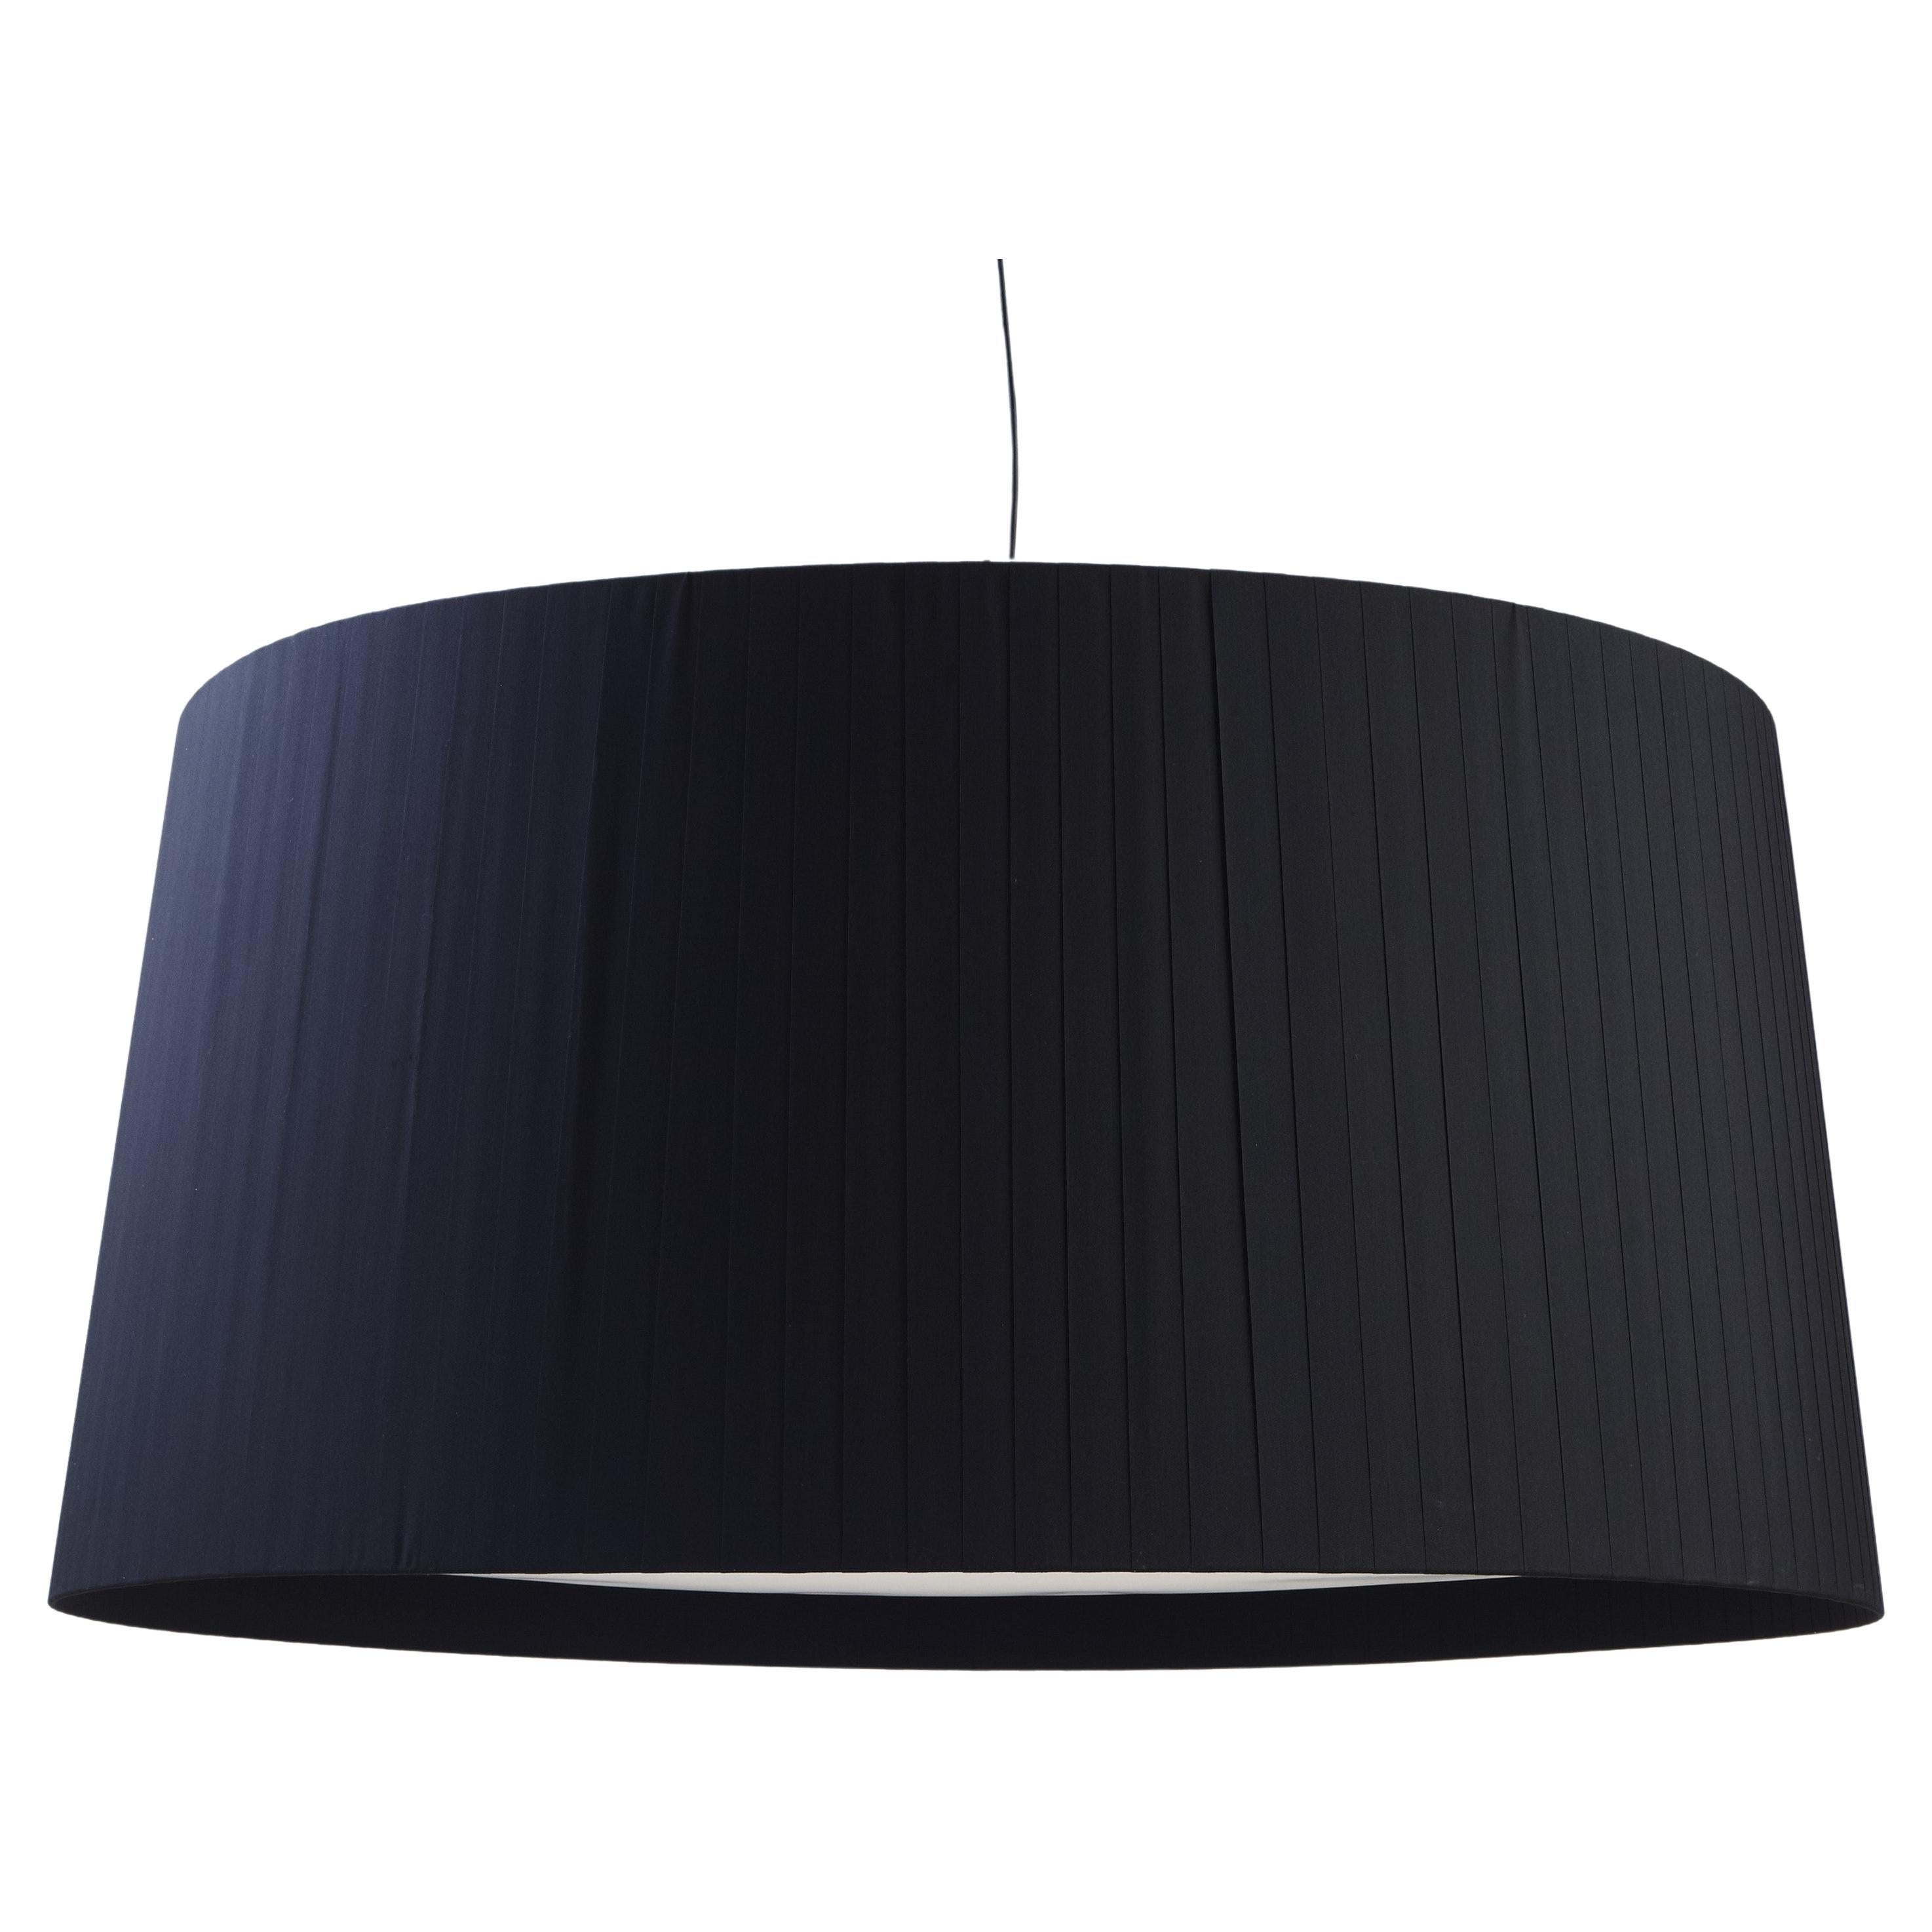 Black GT1500 Pendant Lamp by Santa & Cole For Sale